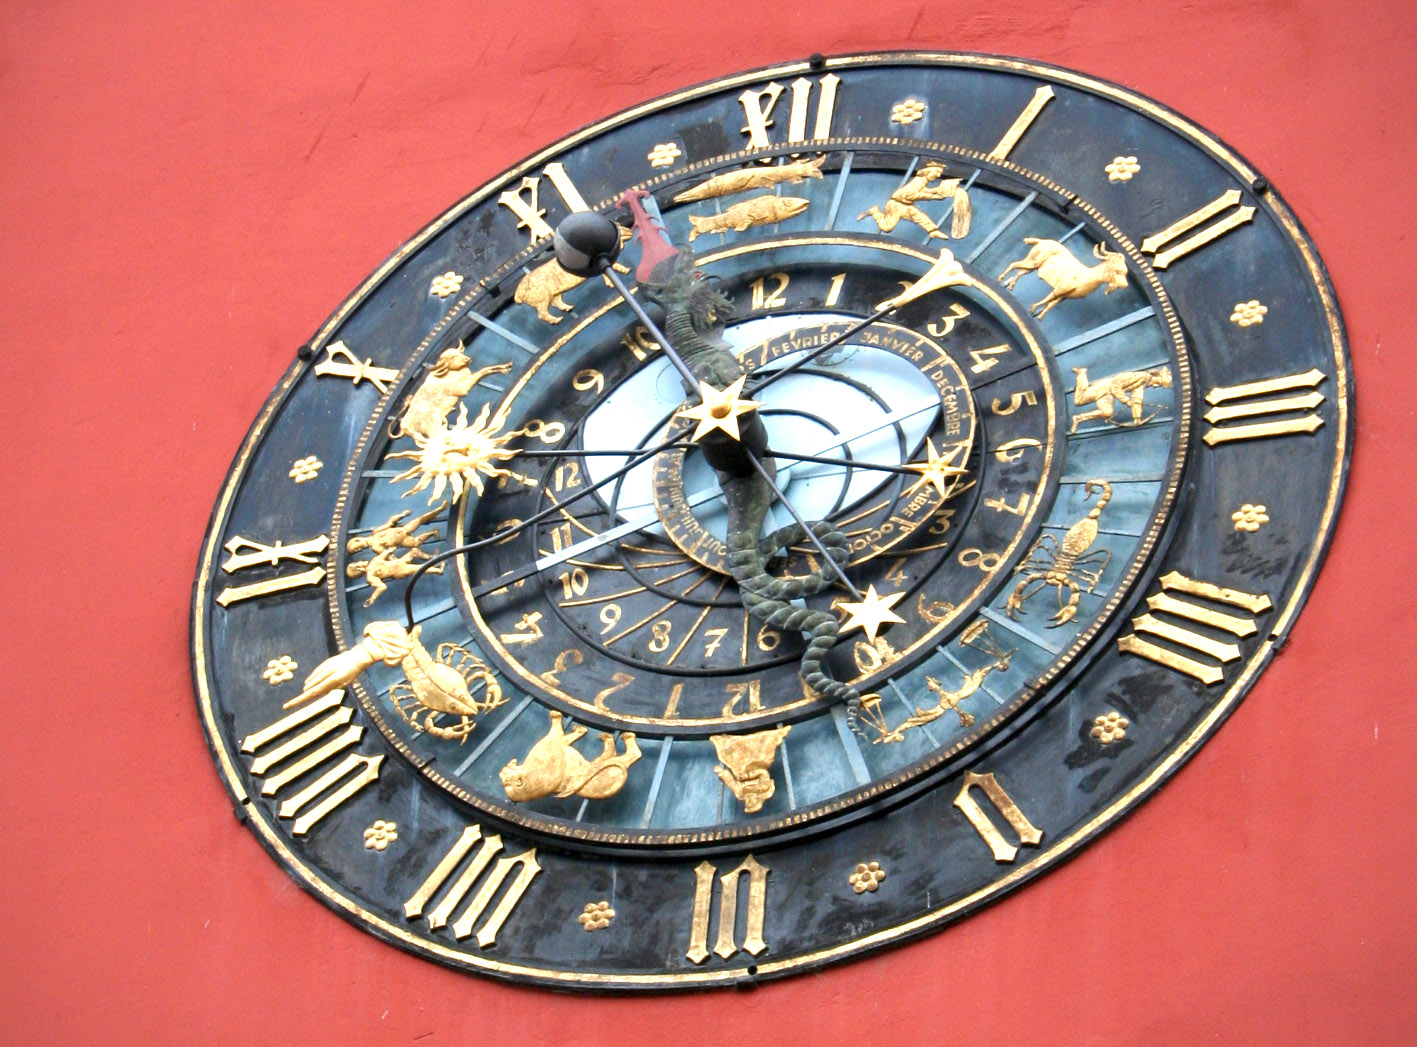 Explications autour des cadrans solaires et de l’horloge astronomique